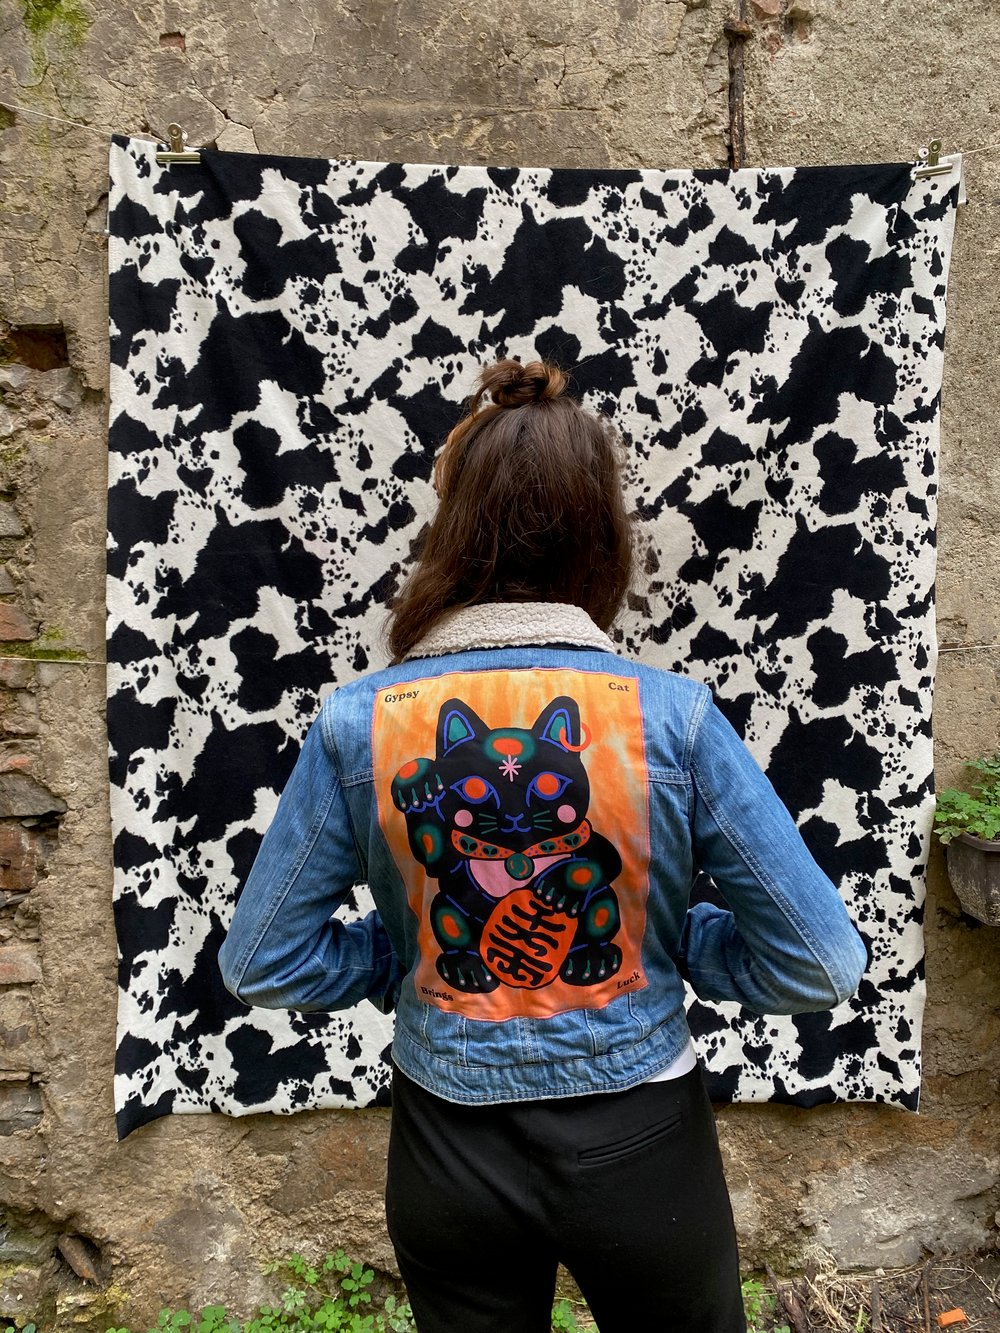 GYPSY CAT jeans jacket with sheepskin